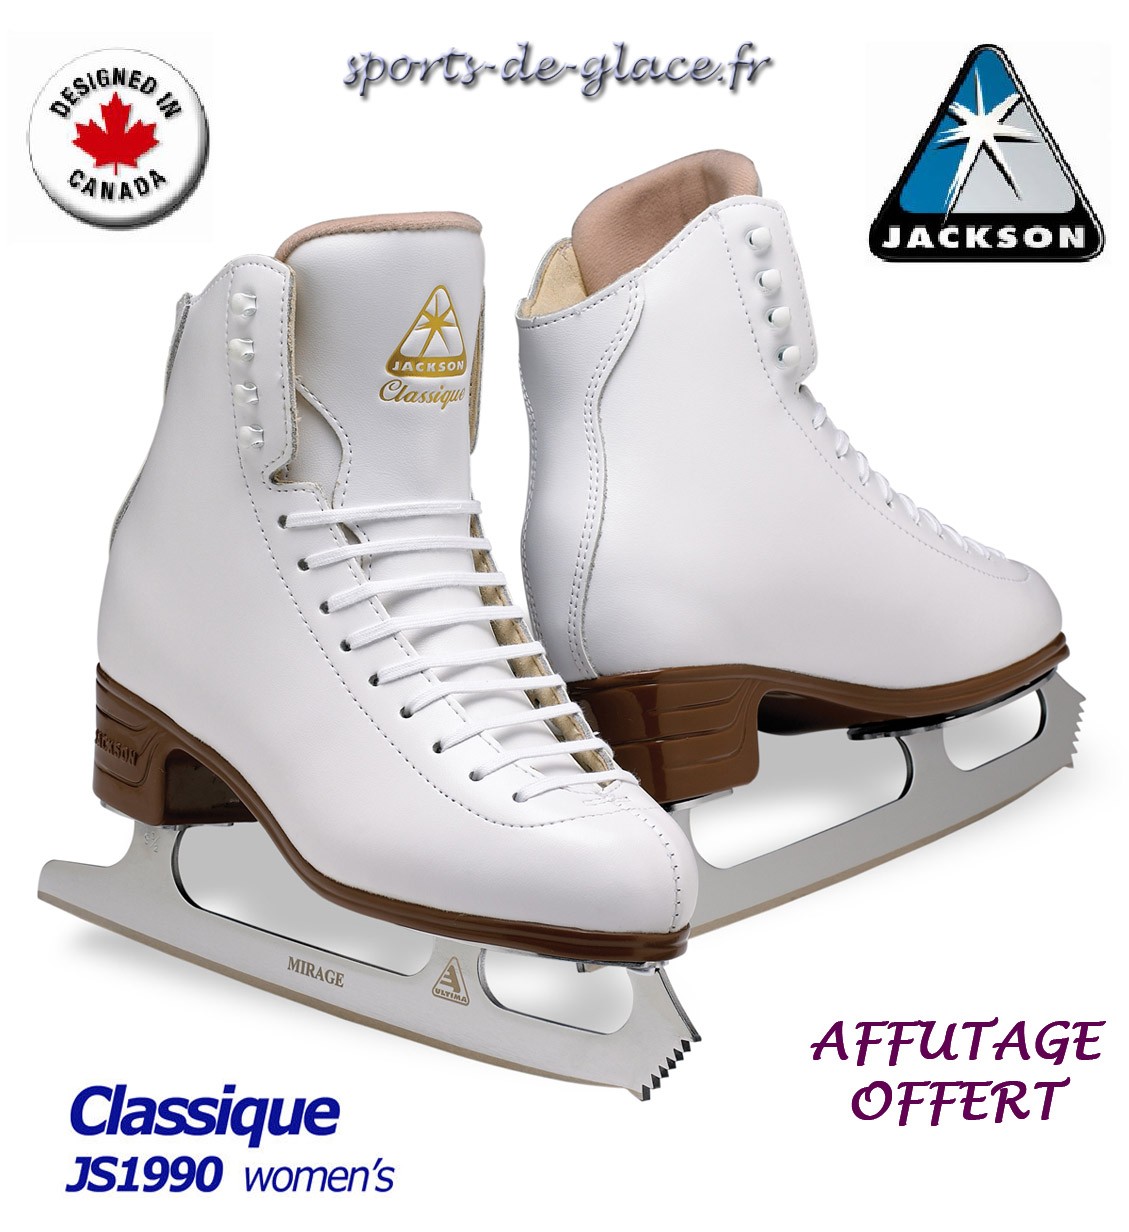 SK8TAPE protection pour bottines de patins - SPORTS DE GLACE France